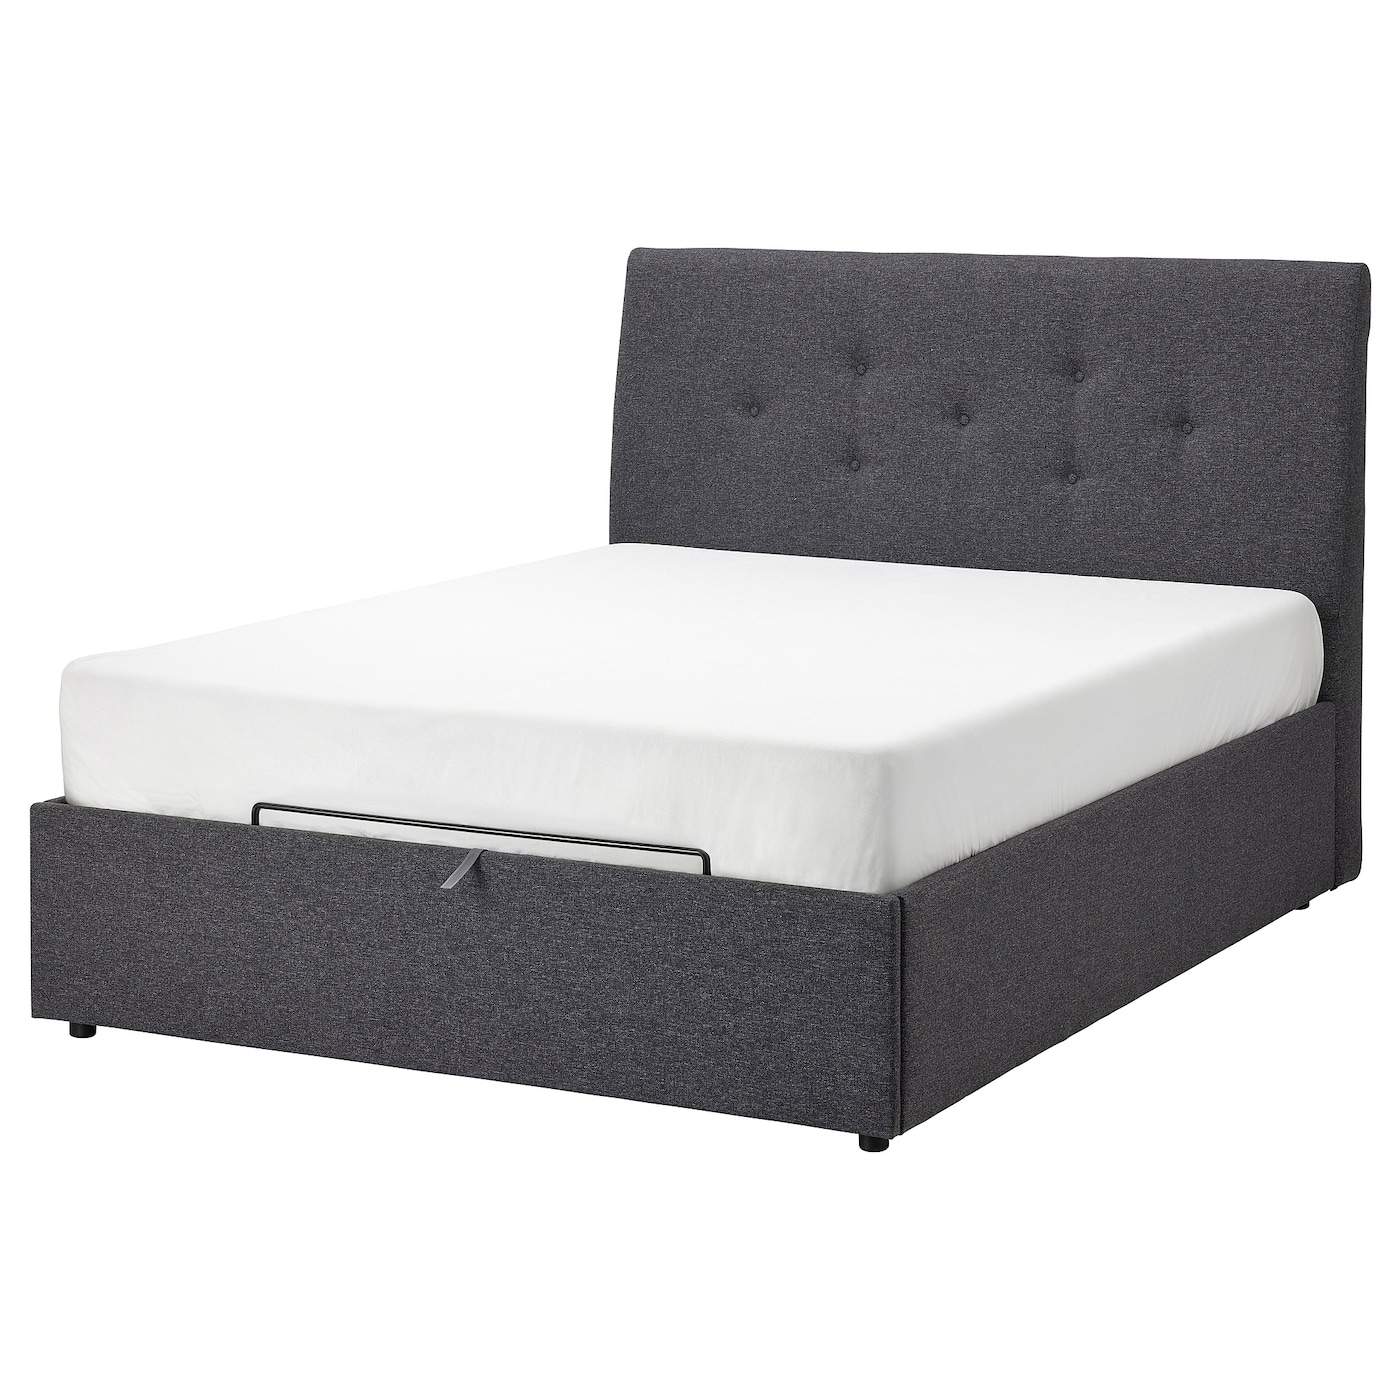 Кровать с местом для хранения  - IKEA IDANÄS/IDANAS, 200х140 см, темно-серый, ИДАНЭС ИКЕА